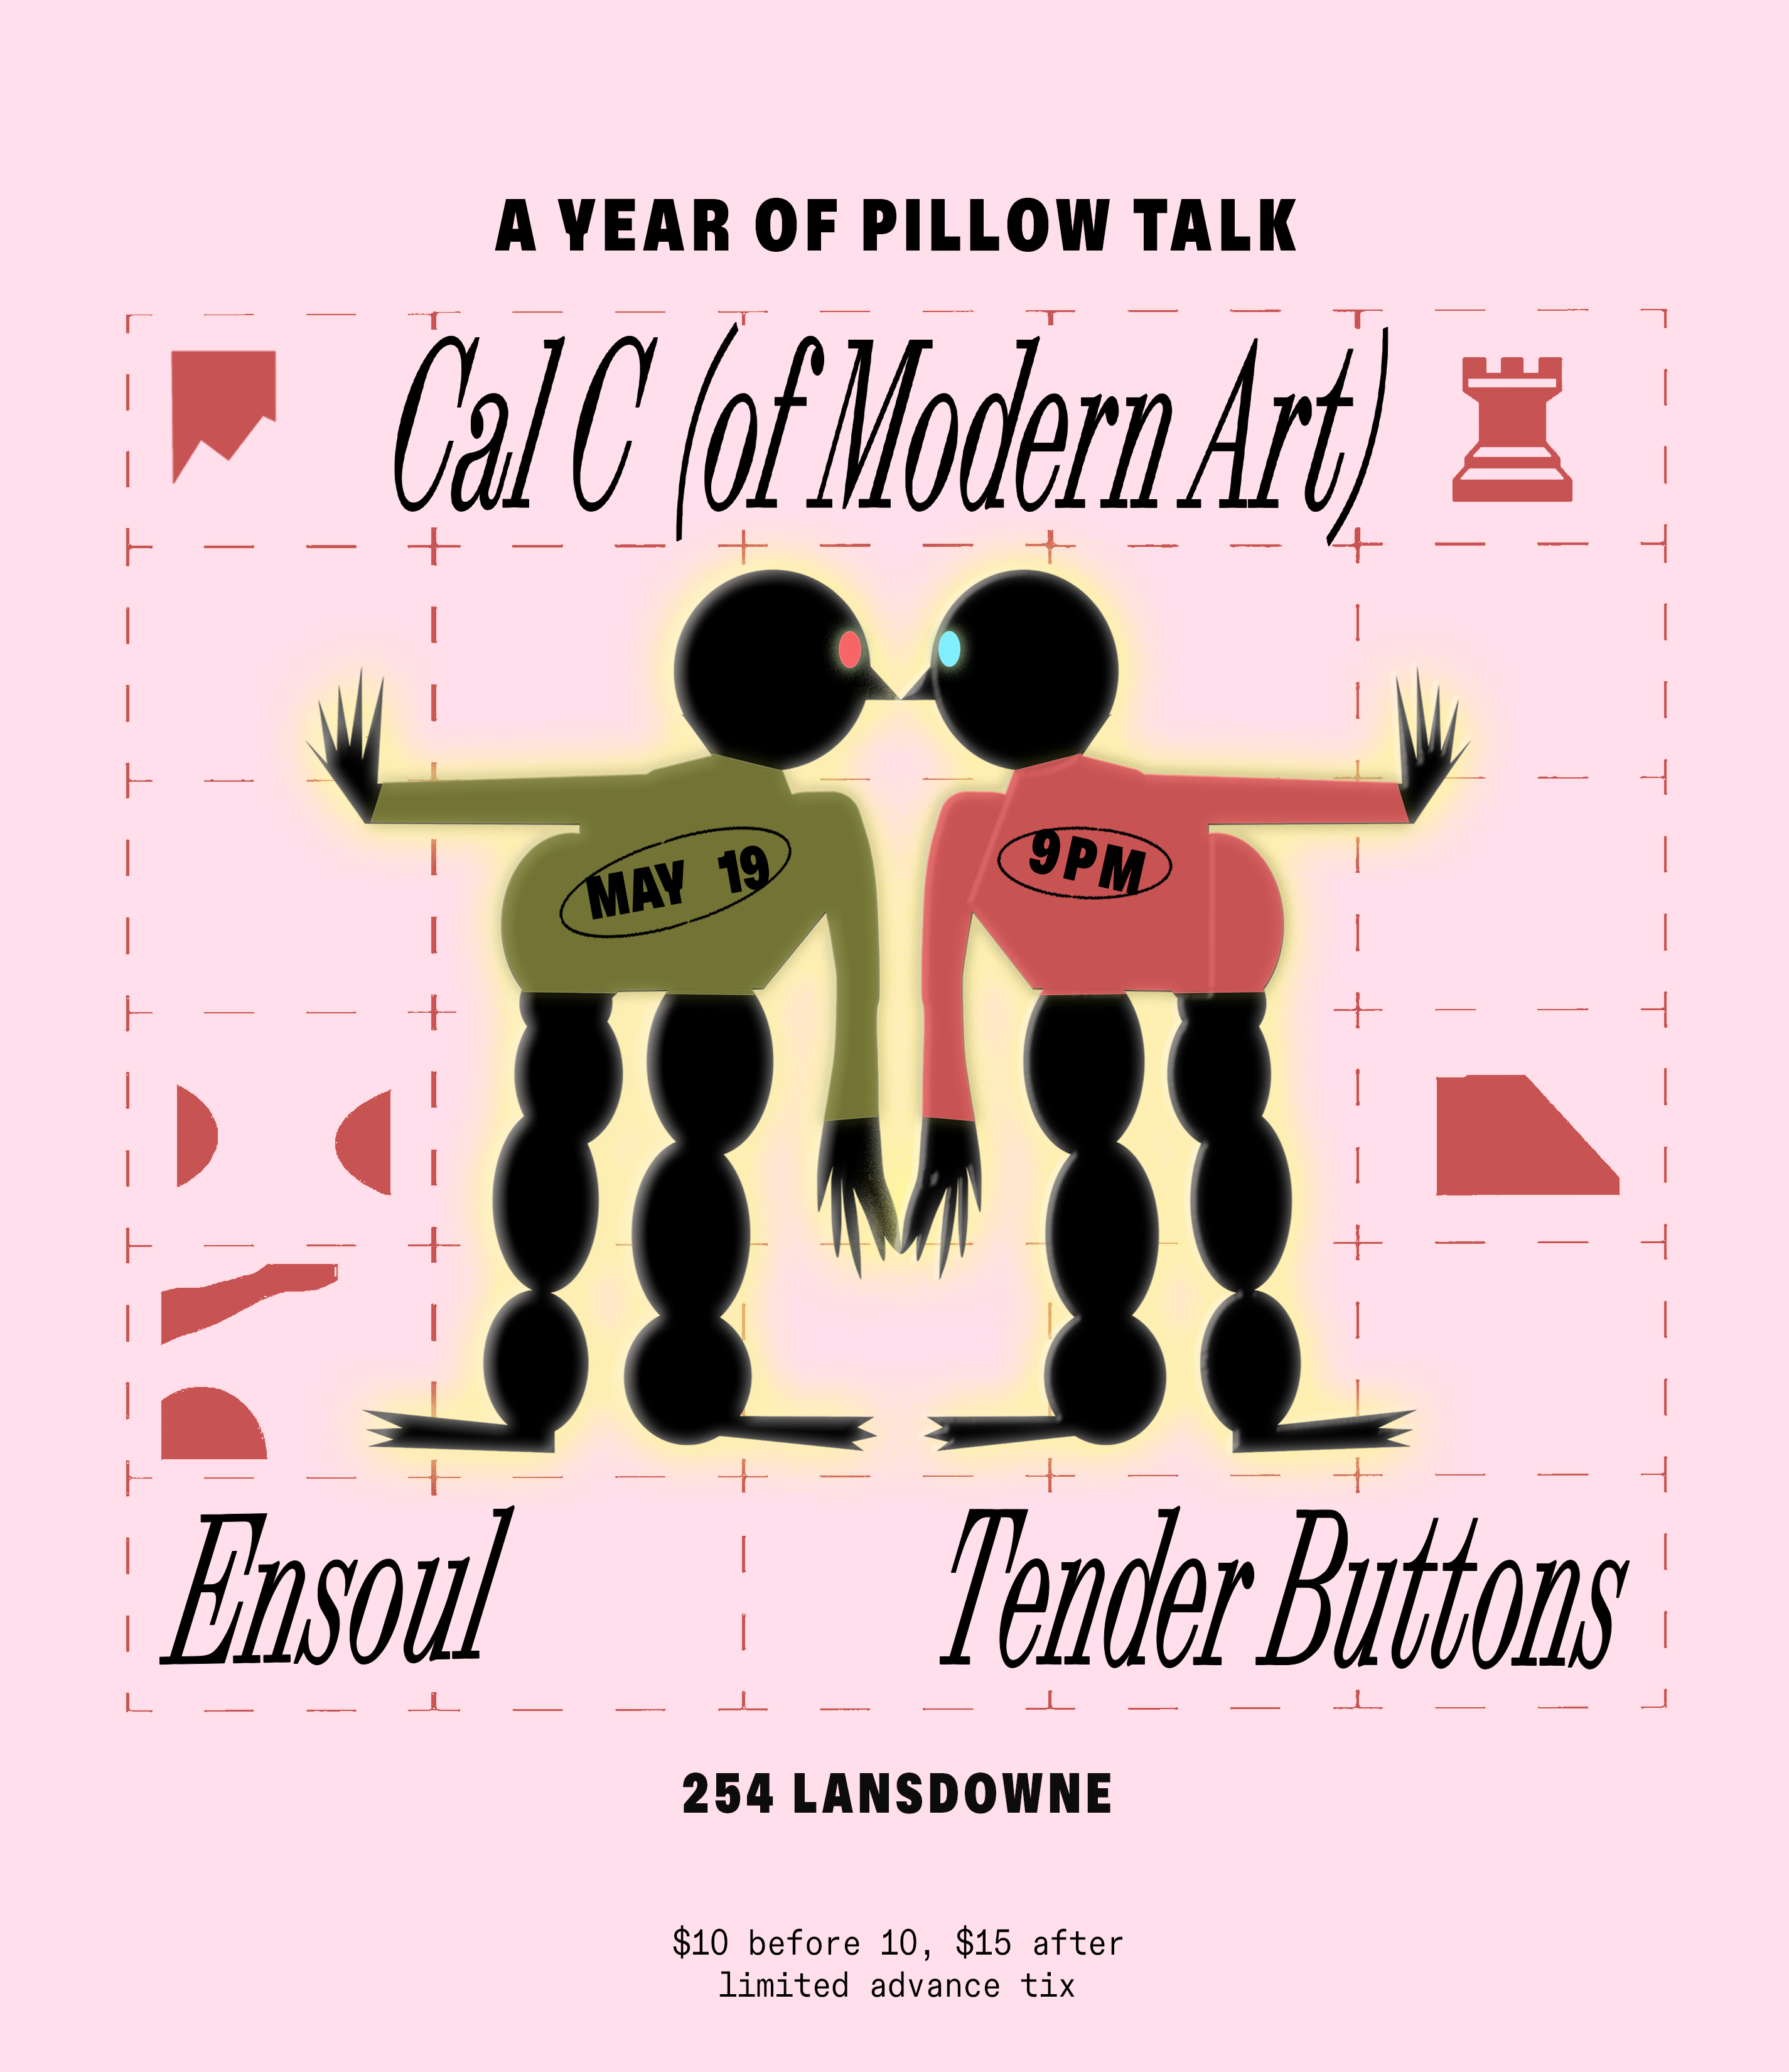 A Year Of Pillow Talk: Cal C (Modern Art), Ensoul & Tender Buttons - フライヤー表